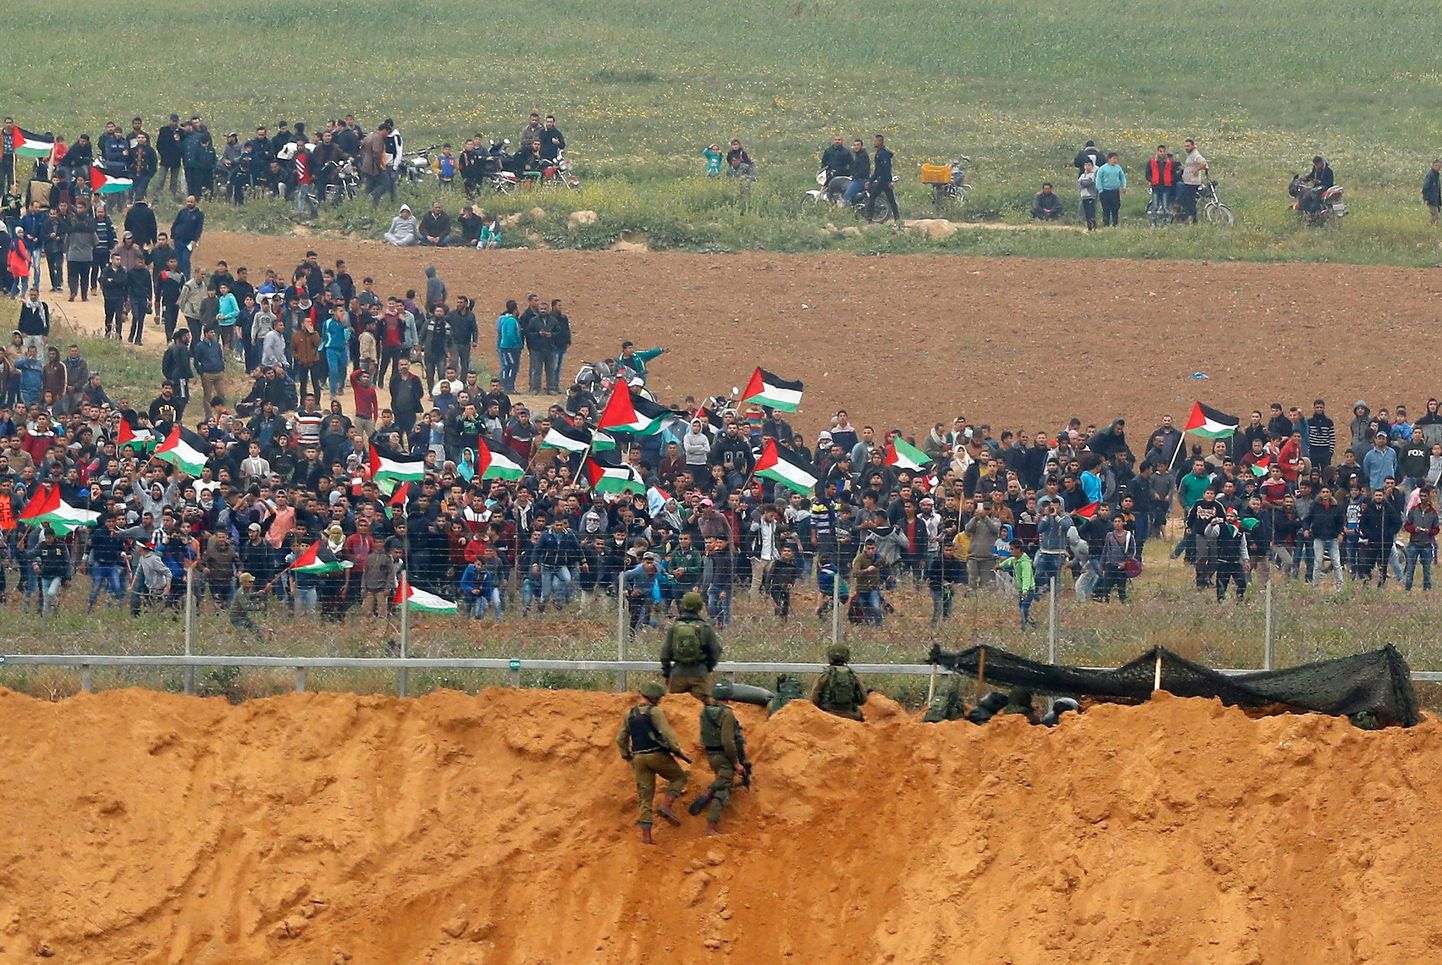 Piiritarale lähedale tulnud palestiinlaste ja seda valvanud Iisraeli sõdurite vahel puhkes kokkupõrge.